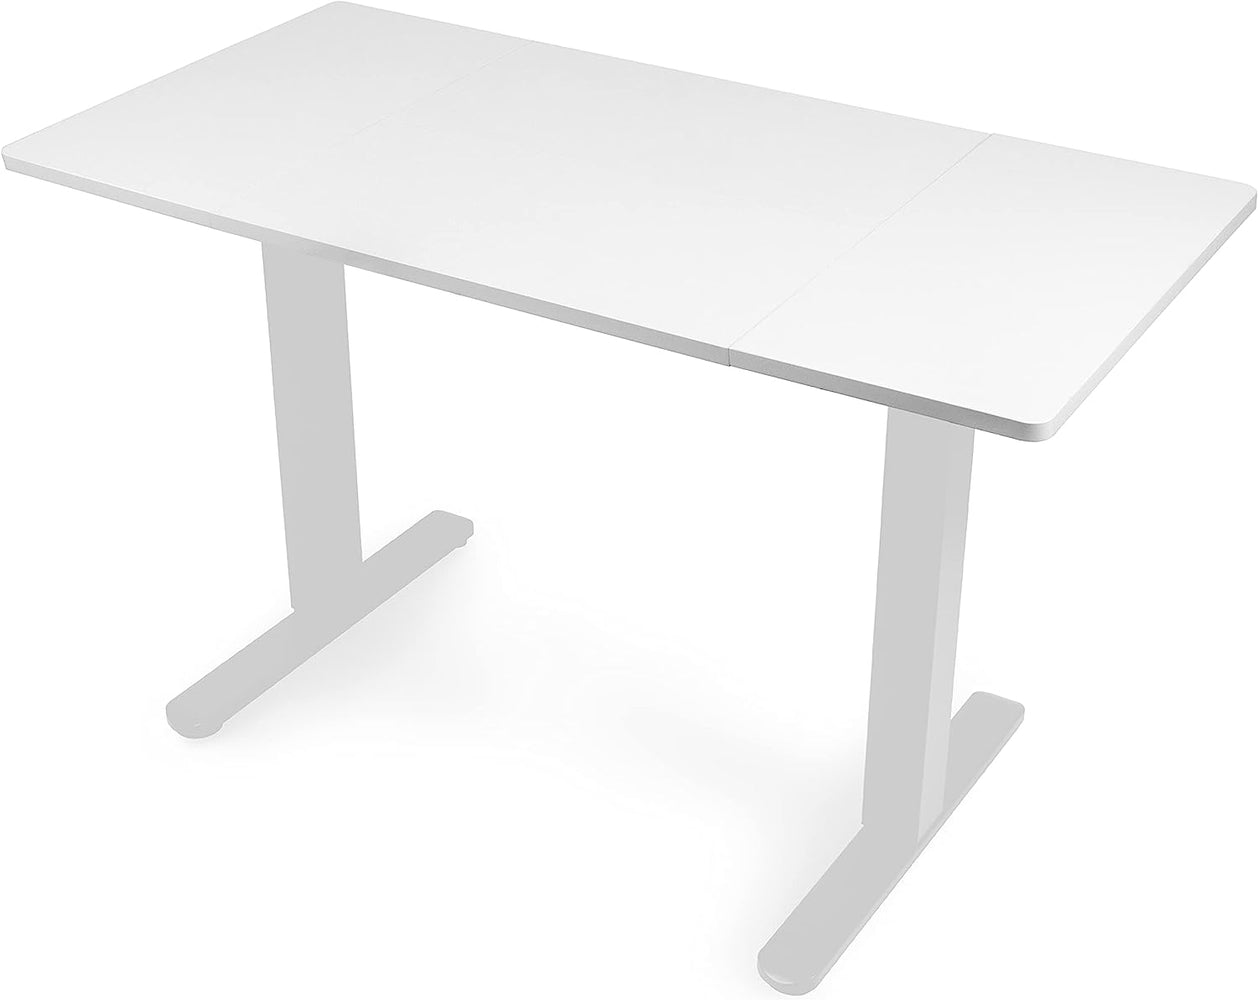 Duronic TT120 WE Blat biurka z elektryczną regulacją wysokości z MDF 120 x 60 cm Kolor: biały | biurko stój-siedź miksuj i łącz blat i rama | wygodne ergonomiczne biurko prostokątne